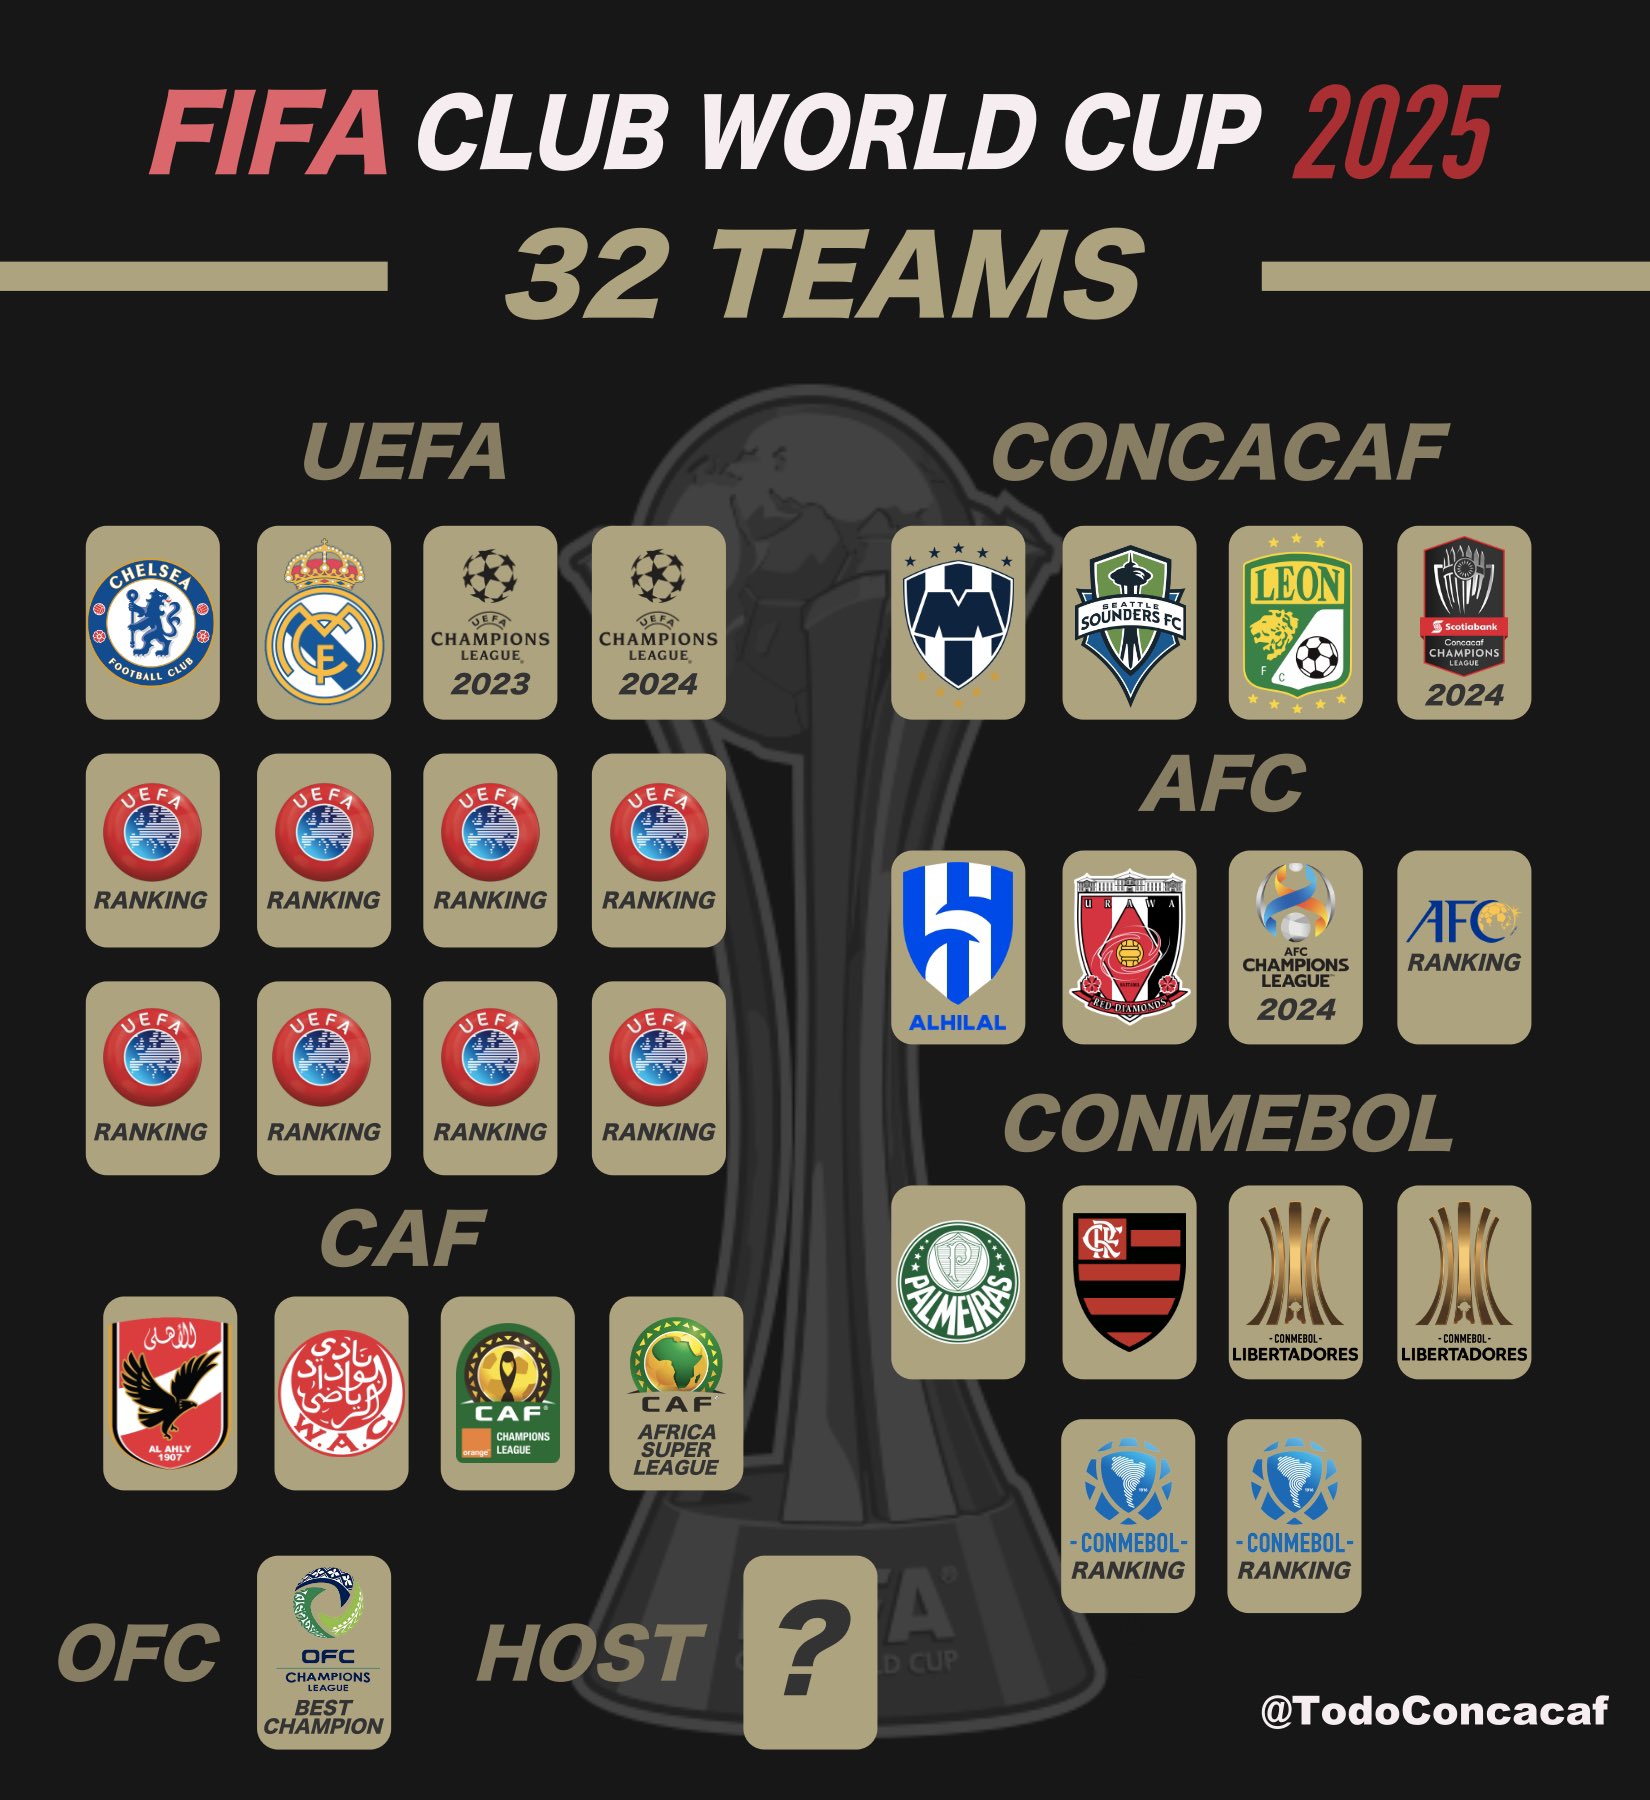 Nuevo Mundial de Clubes 2025: Equipos clasificados, cuándo empieza y qué se  sabe del formato